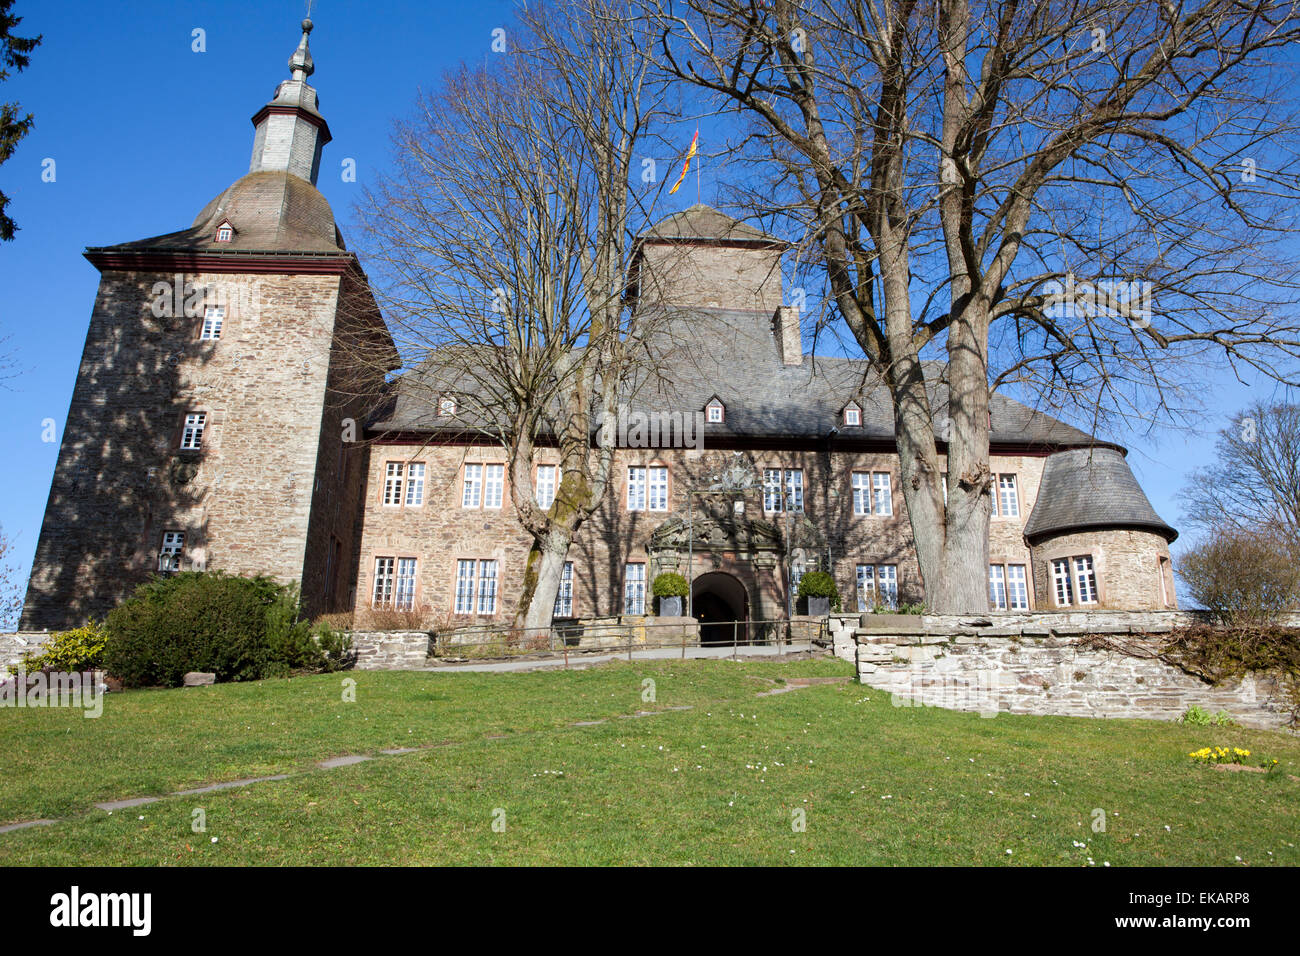 Burg Schnellenberg Castle, Hanseatic City of Attendorn, Sauerland region, North Rhine-Westphalia, Germany, Europe Stock Photo